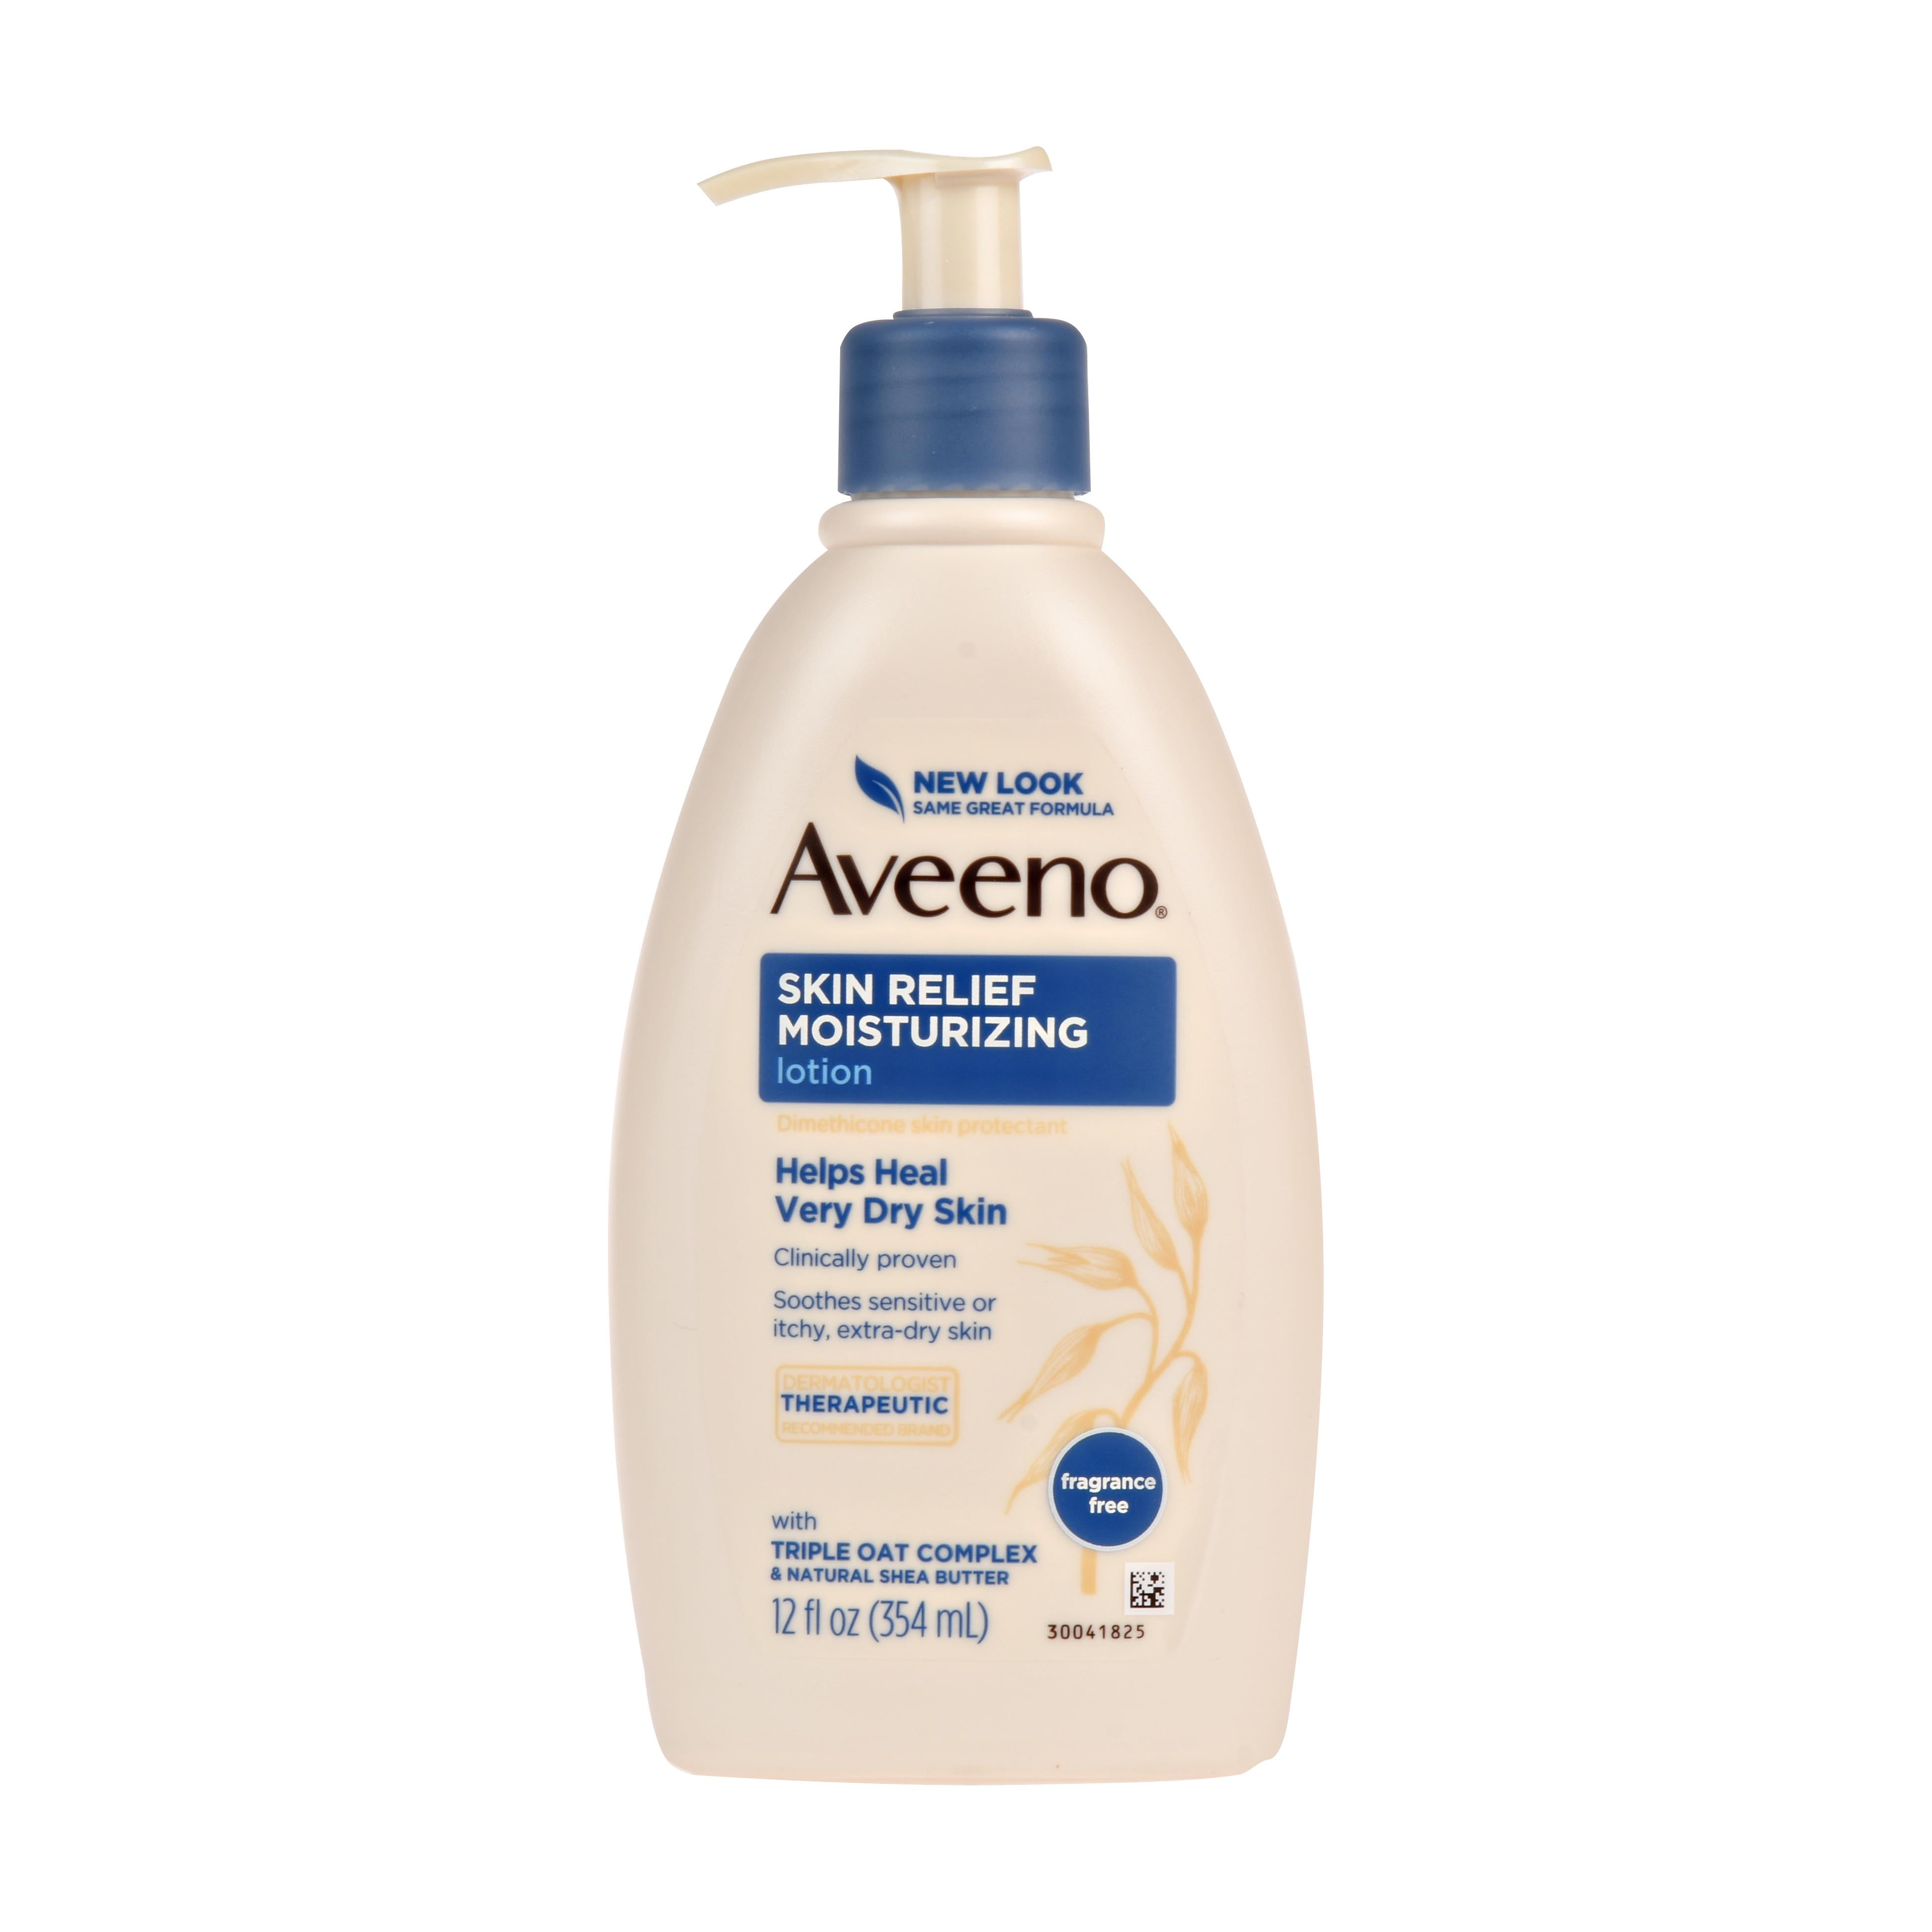 aveeno sunscreen for sensitive skin